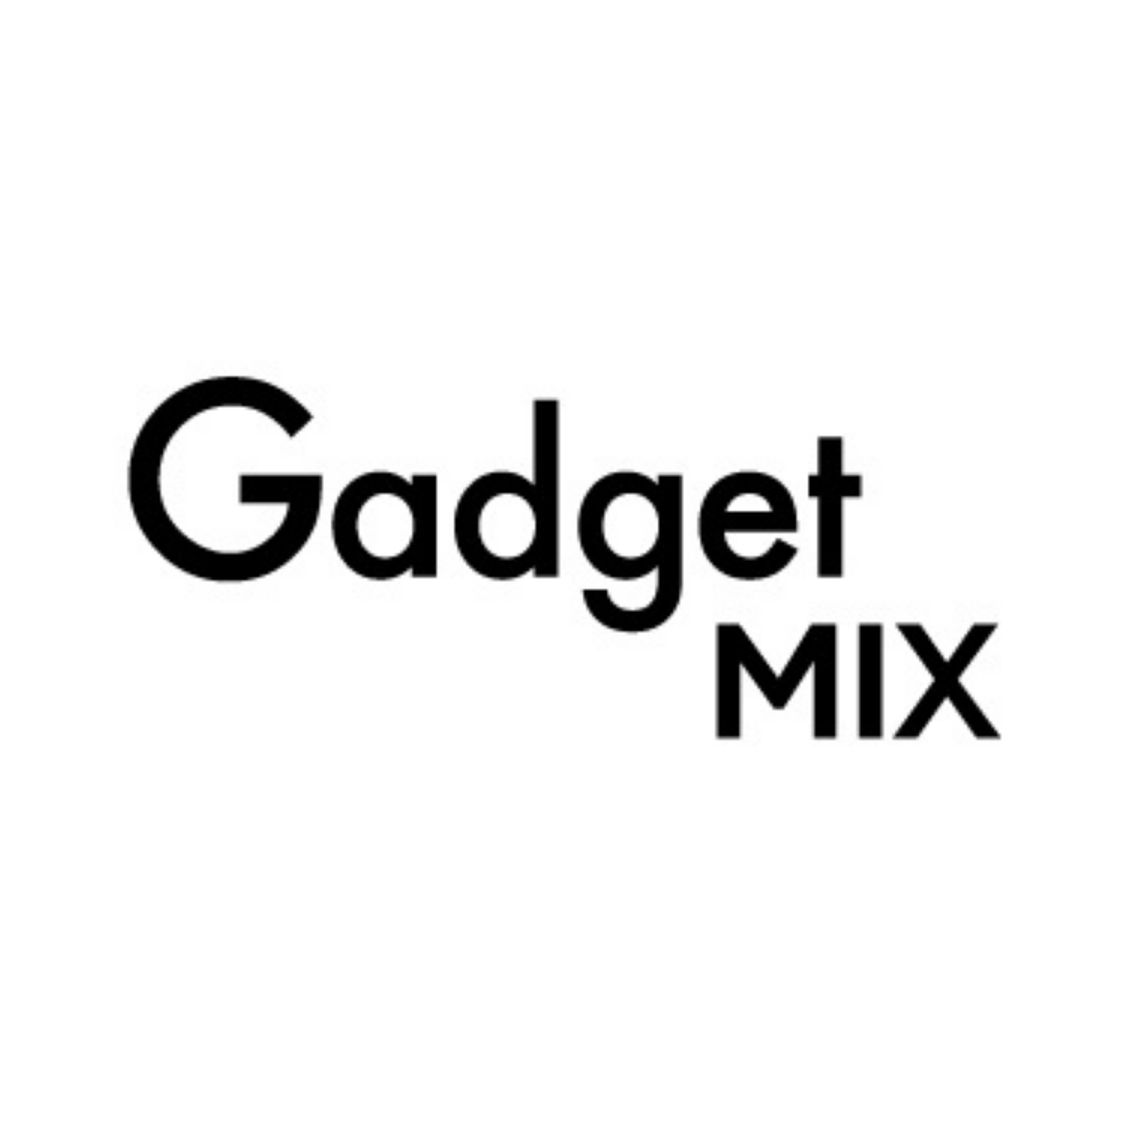 Gadget Mix Logo.jpg